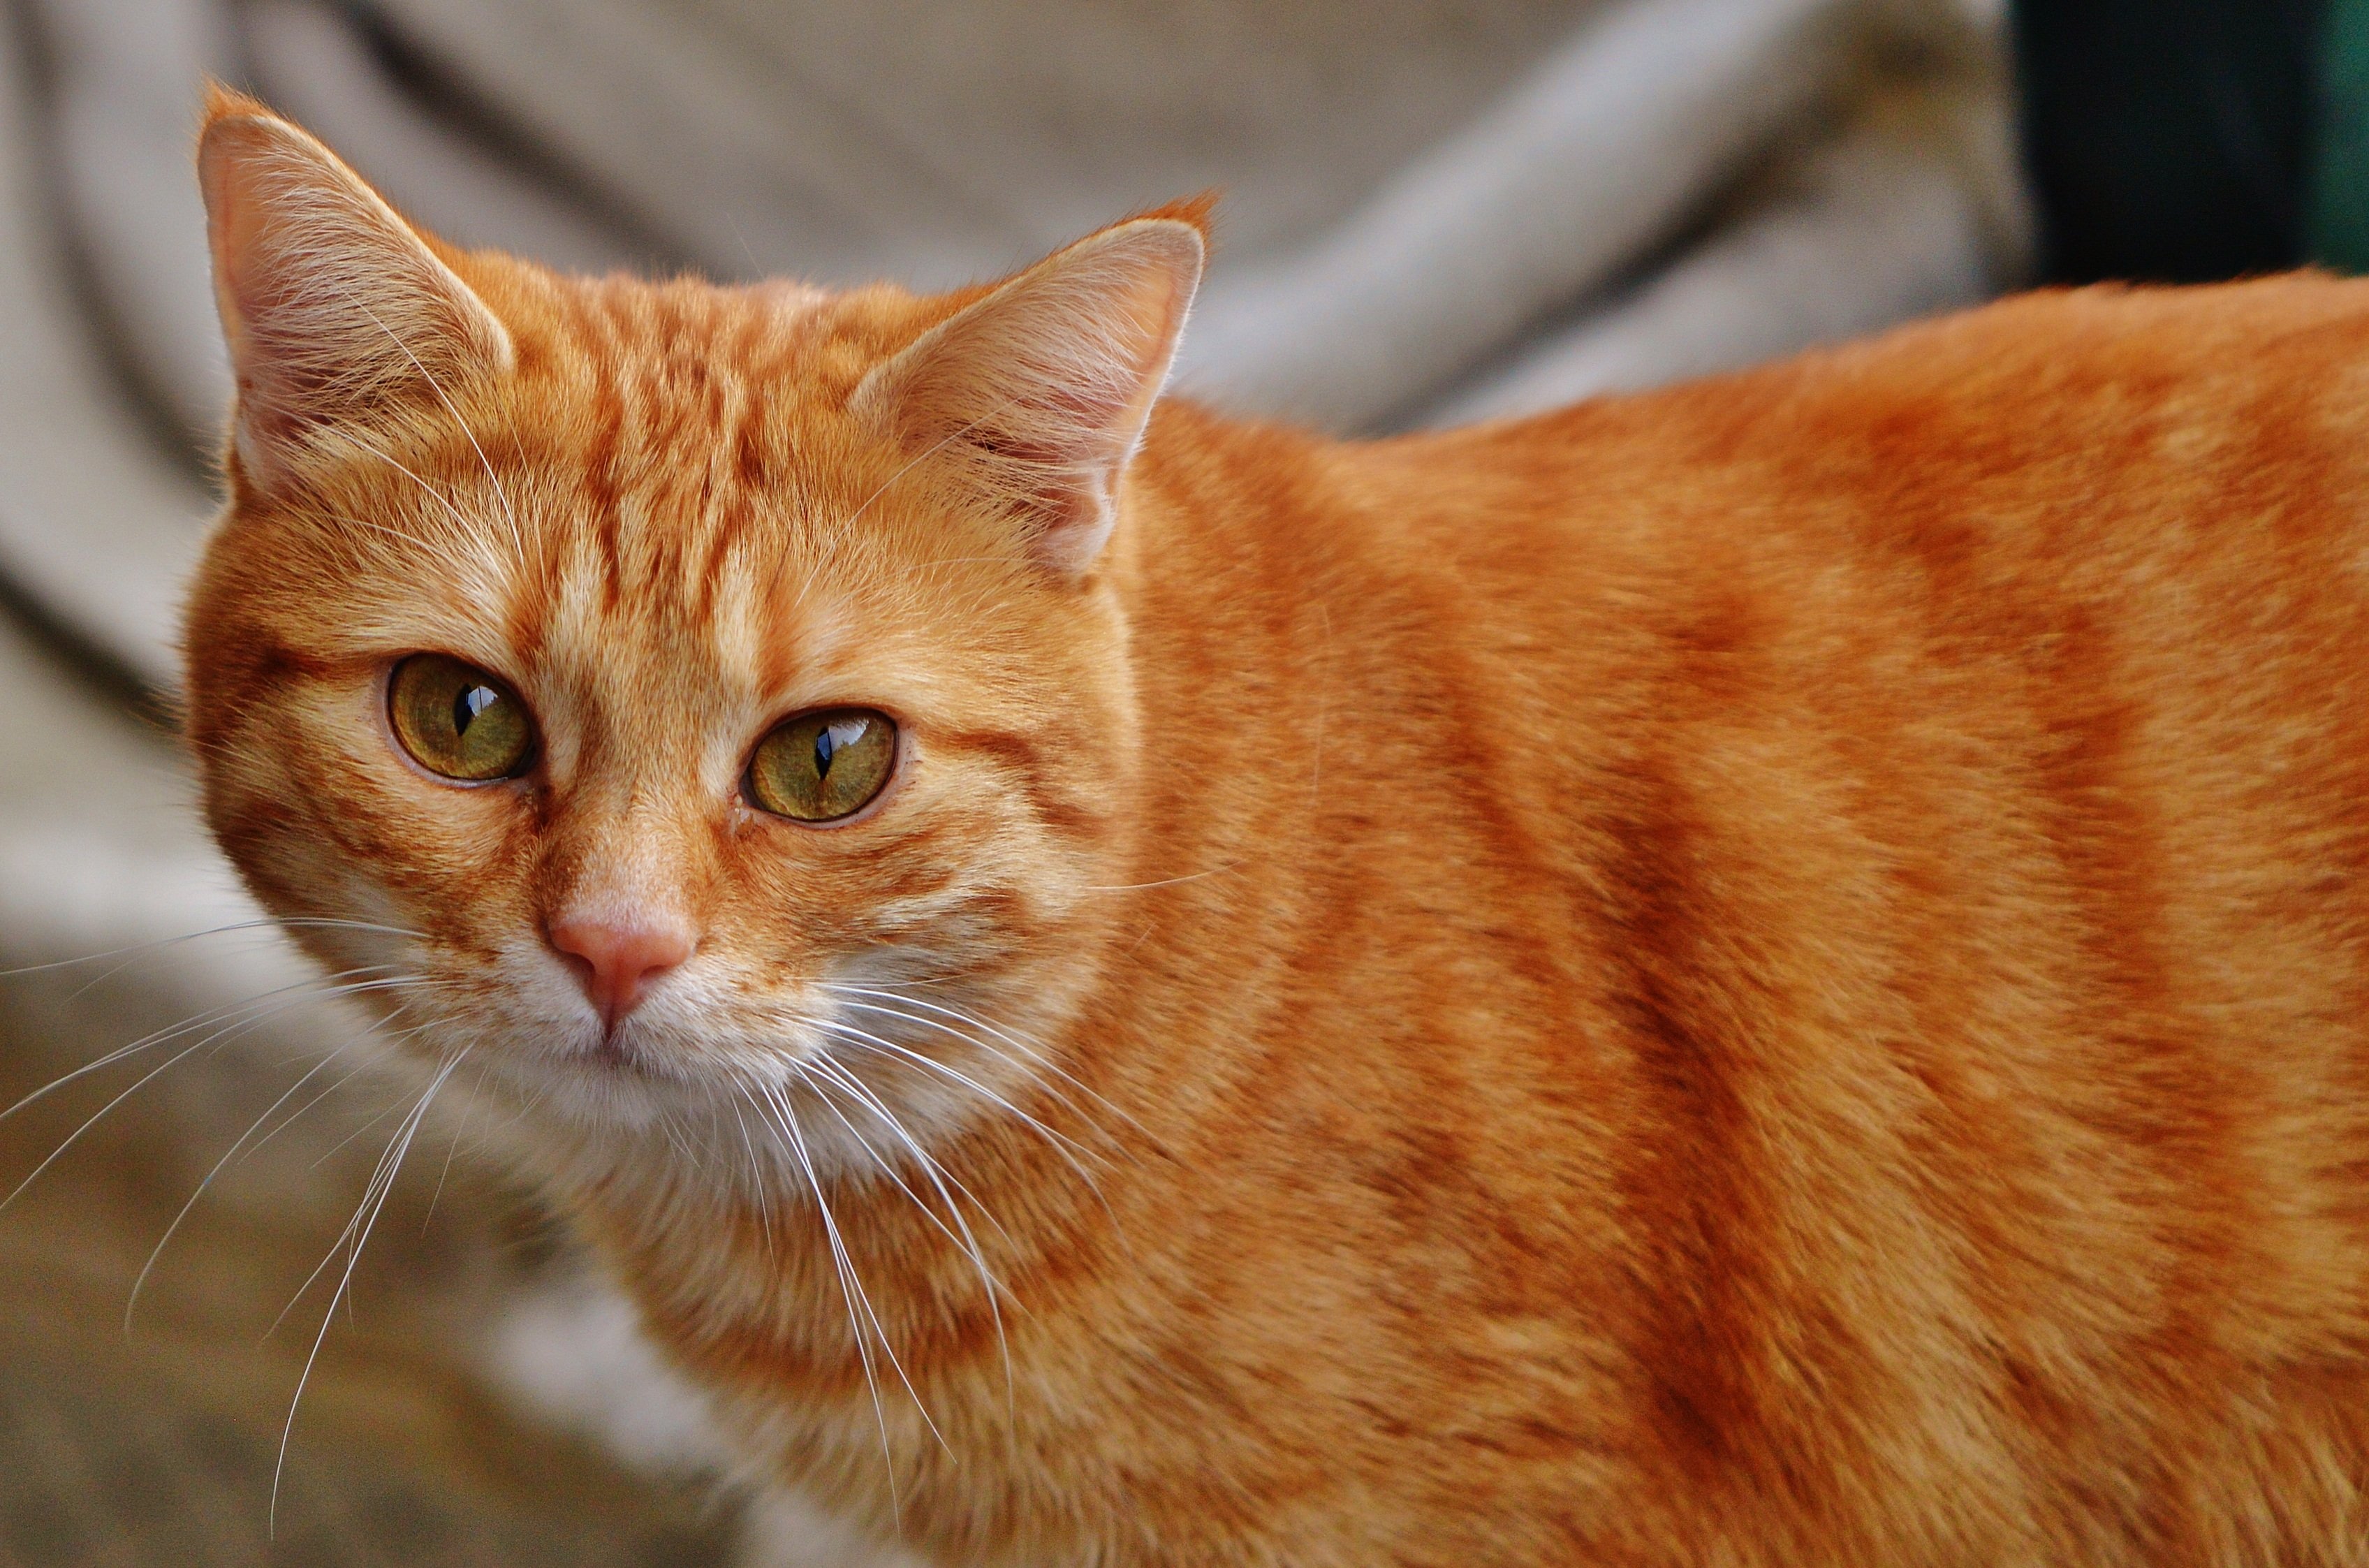 Рыжая бритая. Европейская короткошерстная кошка рыжая. Тигровый макрелевый табби рыжий. Европейская короткошерстная табби рыжий. Британский рыжий кот гладкошерстный.